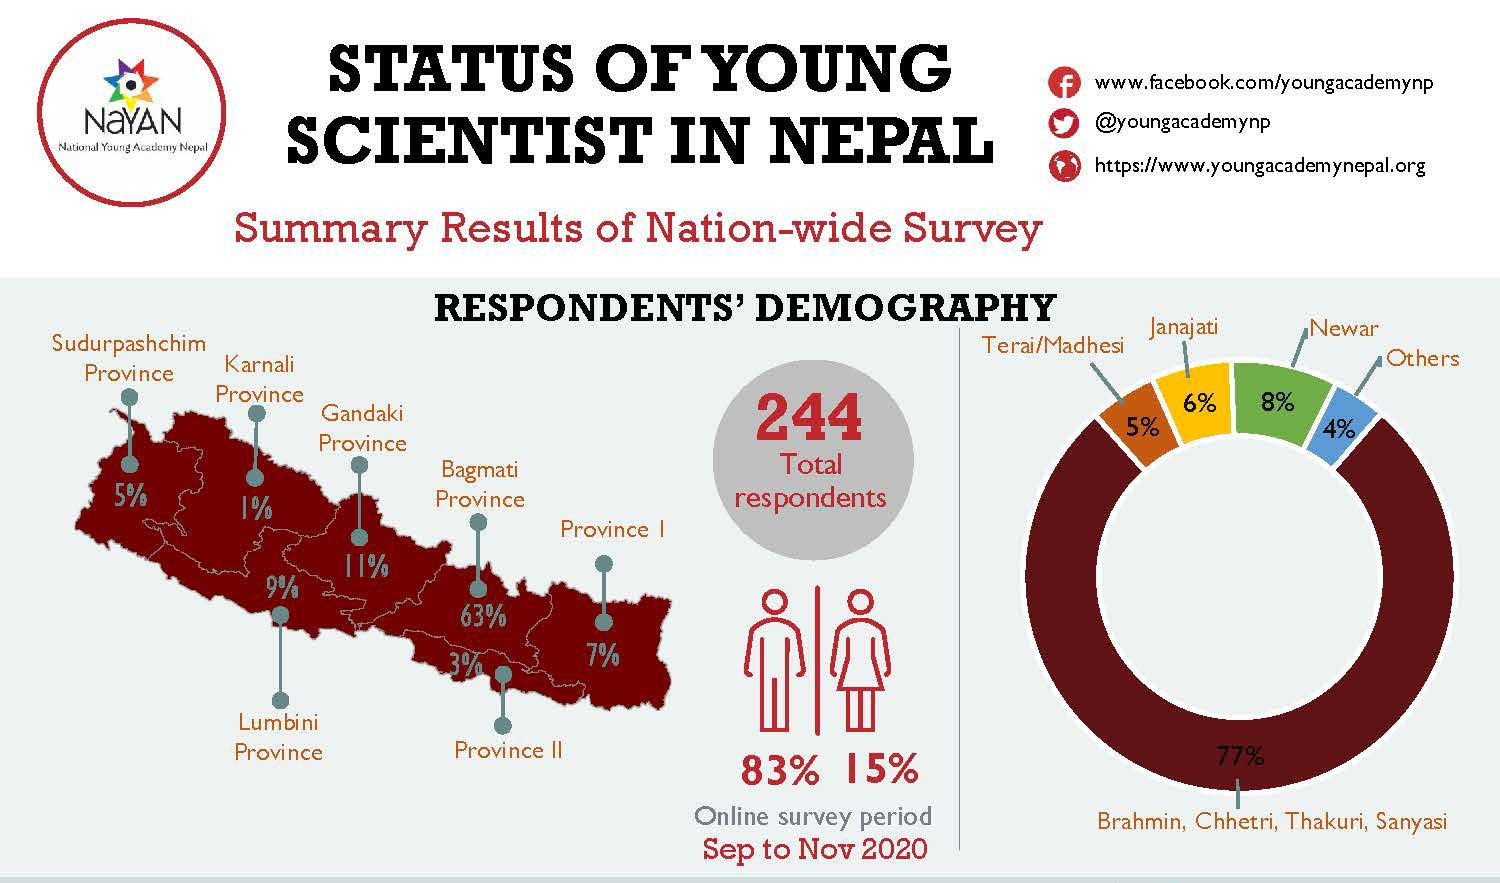 नयनको सर्वेक्षण नतिजा : अहिलेका नेपाली वैज्ञानिकहरू 'पहिलो पुस्ता' को रूपमा सक्रिय